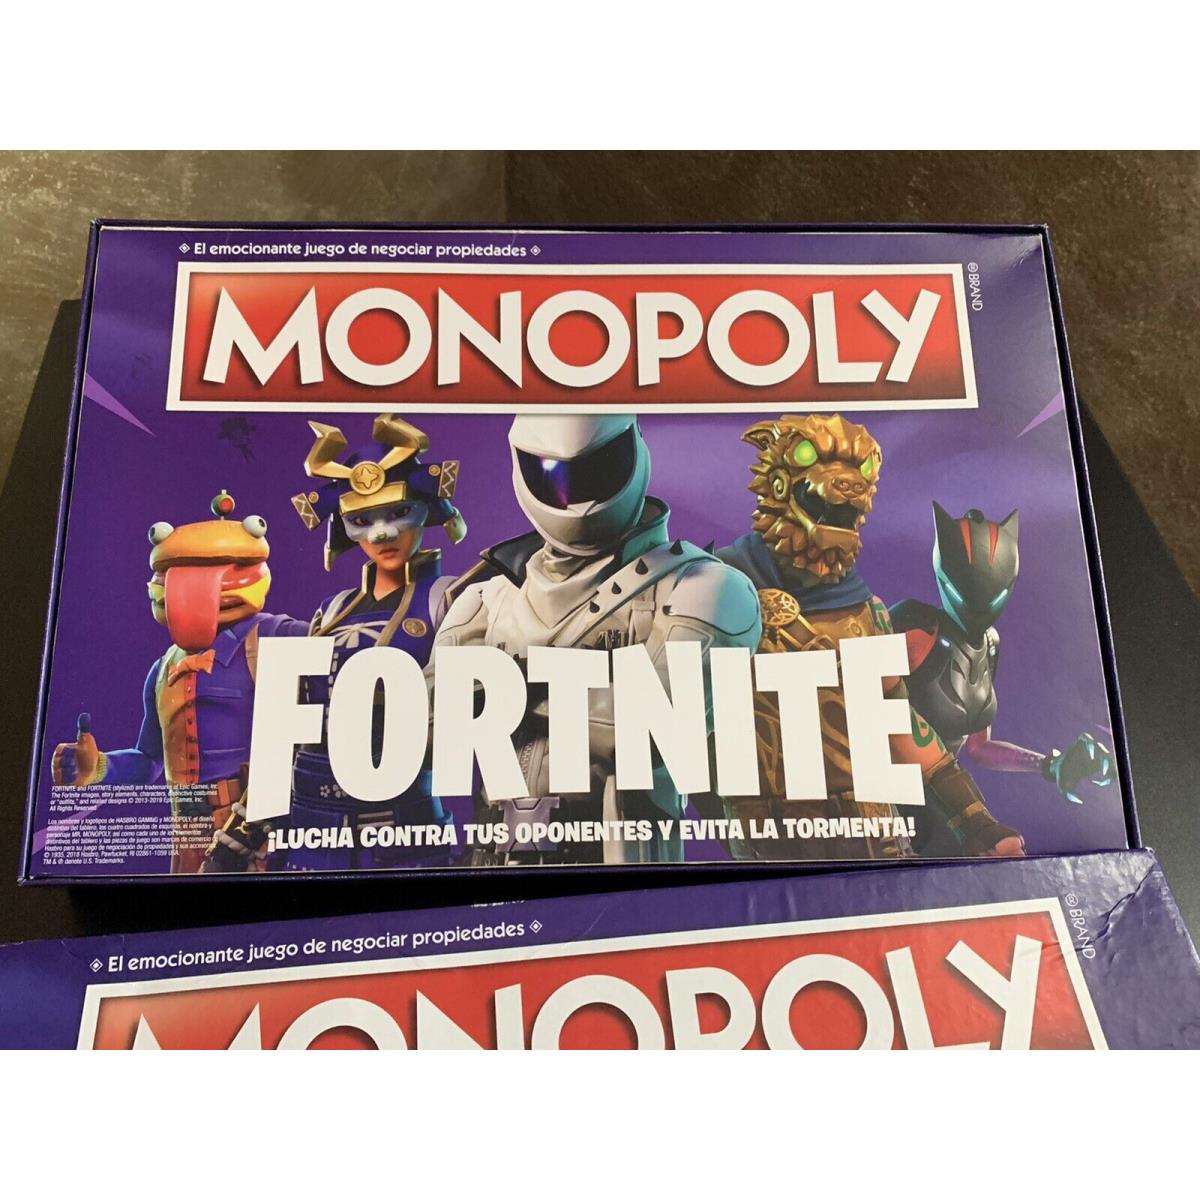 Monopoly Boardgame - Fortnite - Spanish Version